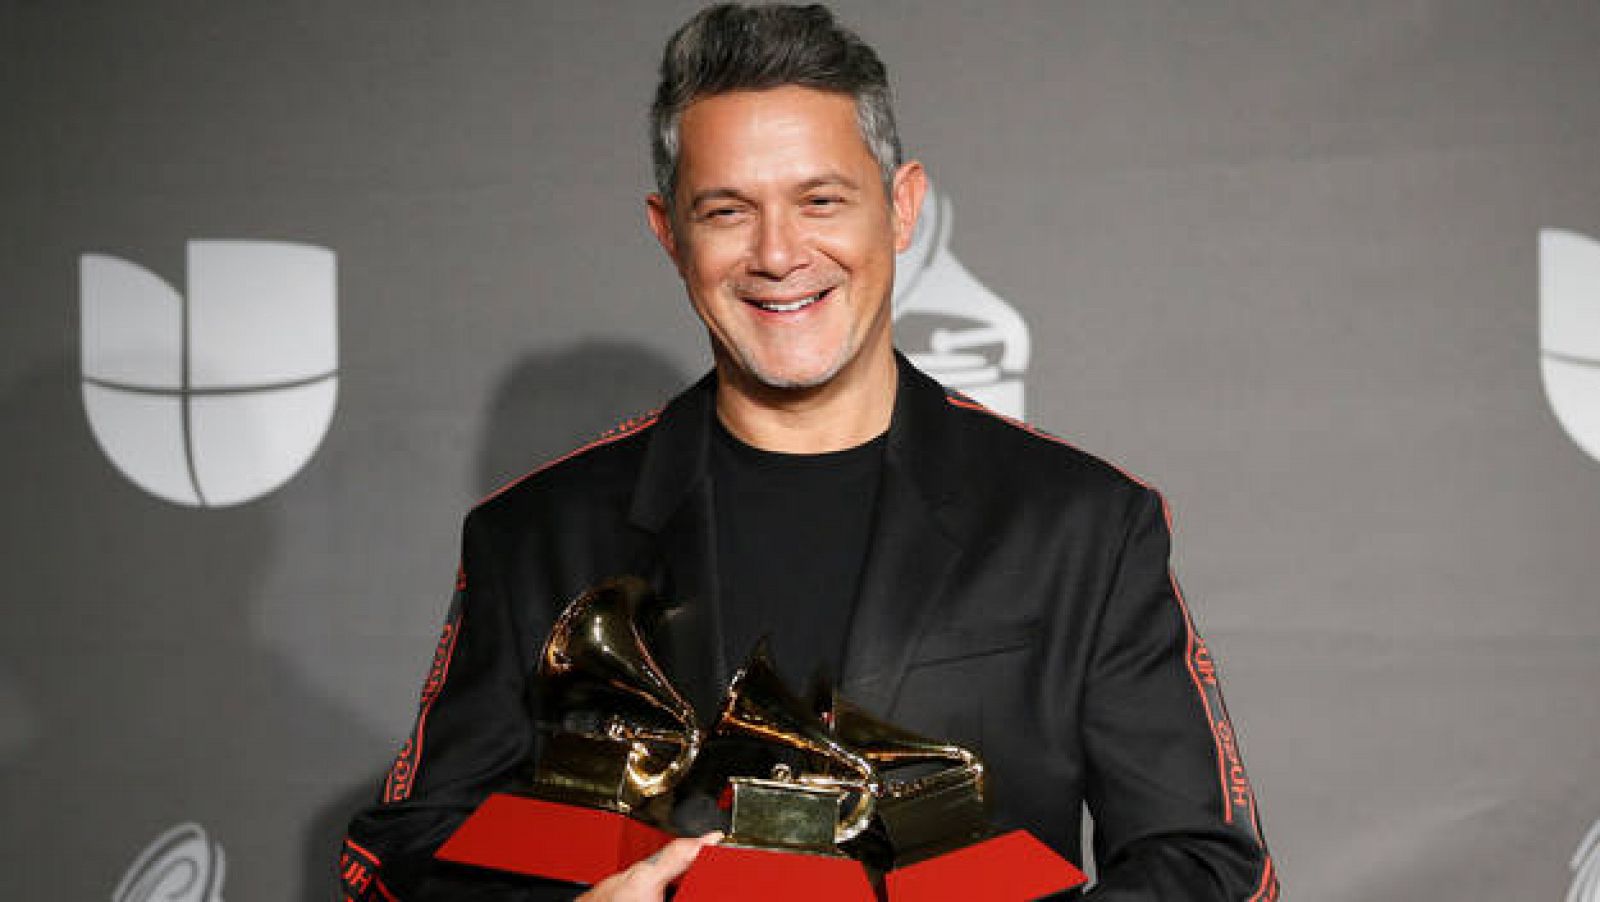 Premios Odeón: Alejandro Sanz celebra que vuelva a haber unos premios de música en España